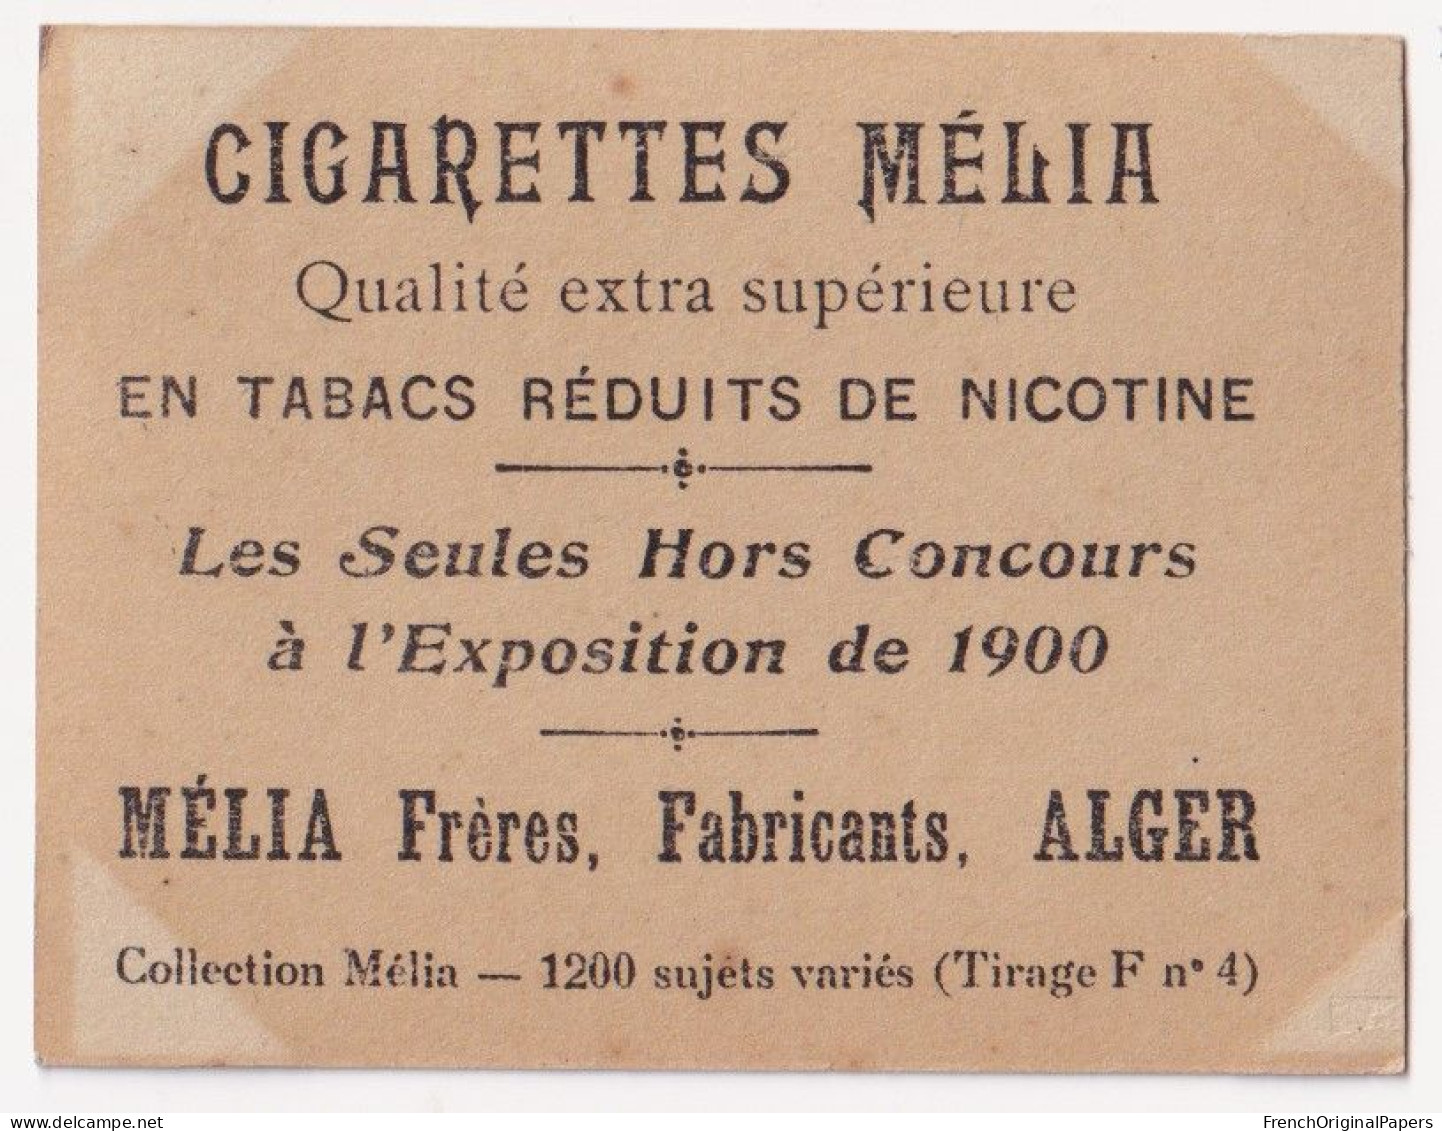 Céaly - Cigarettes Mélia 1910 Photo Femme Sexy Lady Pin-up Woman Nue Vintage Alger Artiste Cabaret érotique A62-12 - Sigarette (marche)